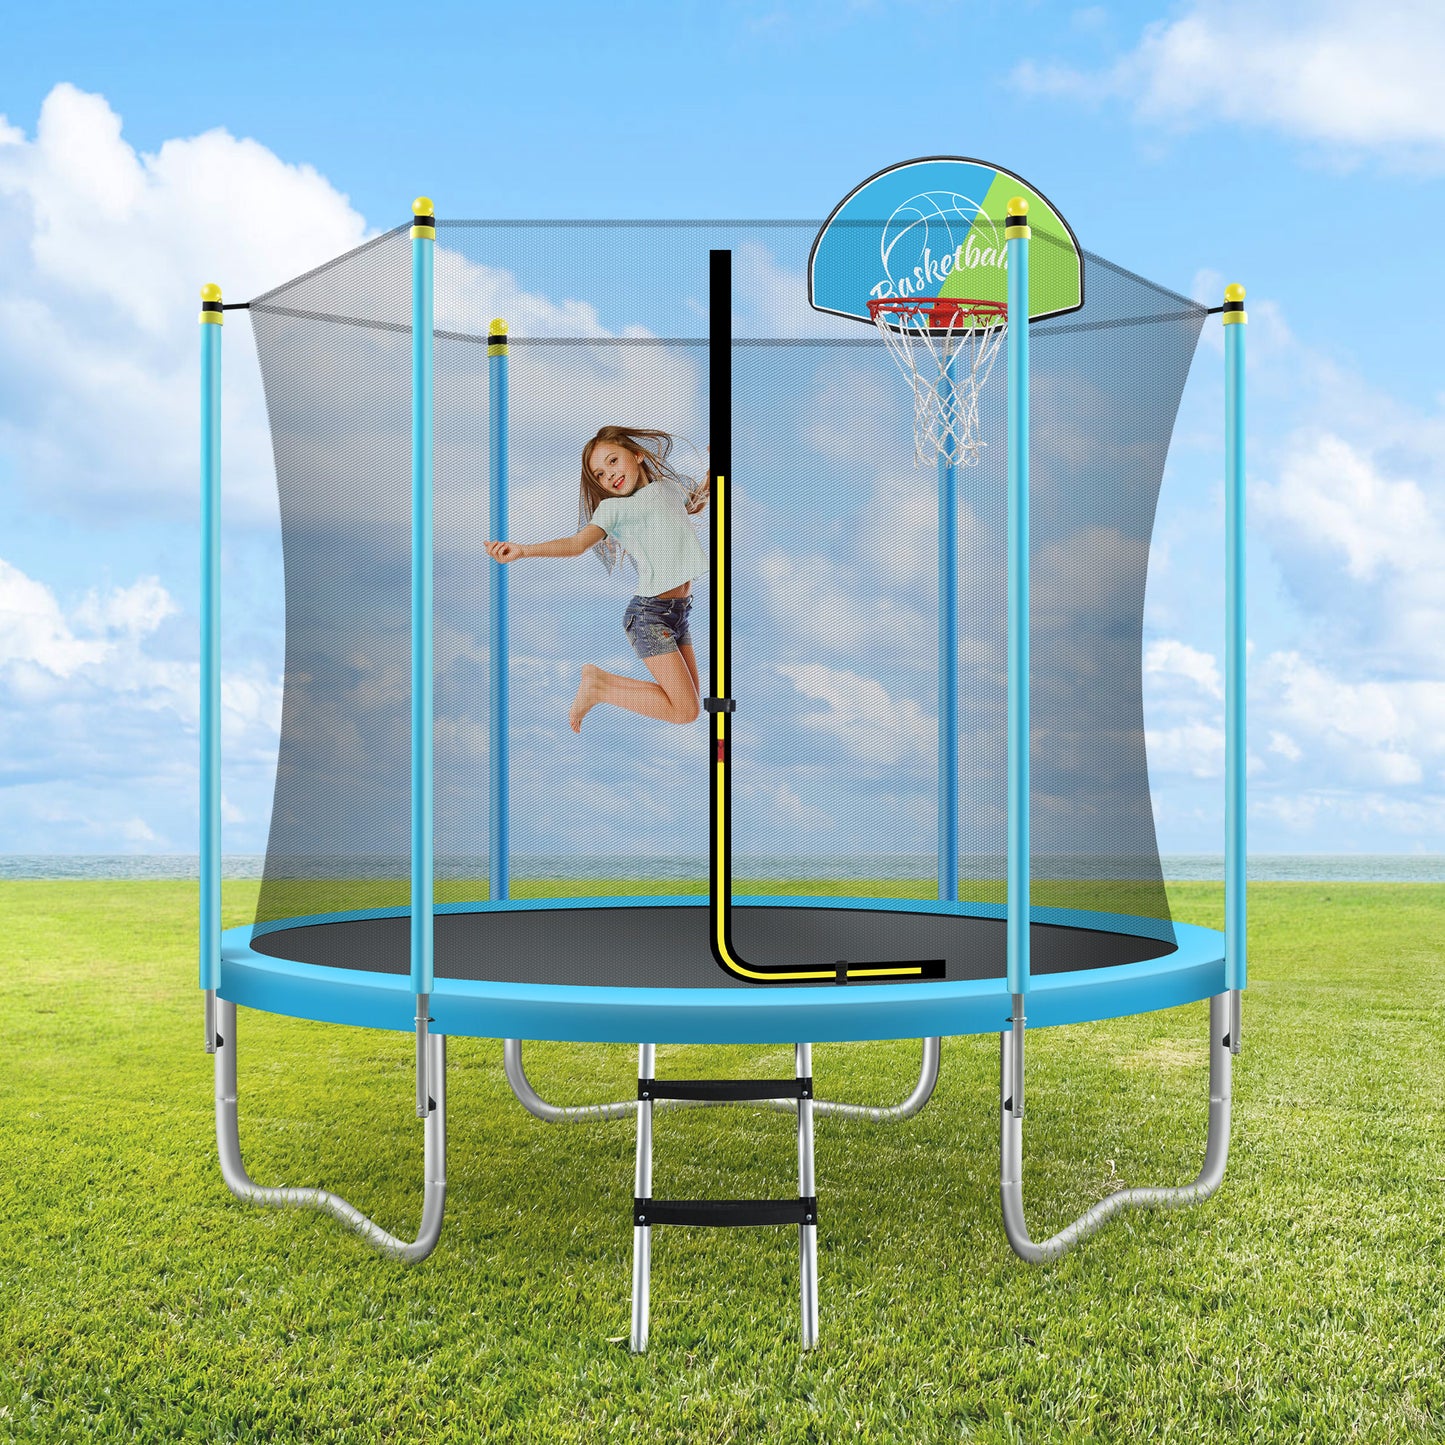 8-Fuß-Trampolin für Kinder mit Sicherheitsnetz, Basketballkorb und Leiter, einfach aufzubauendes rundes Freizeittrampolin für den Außenbereich